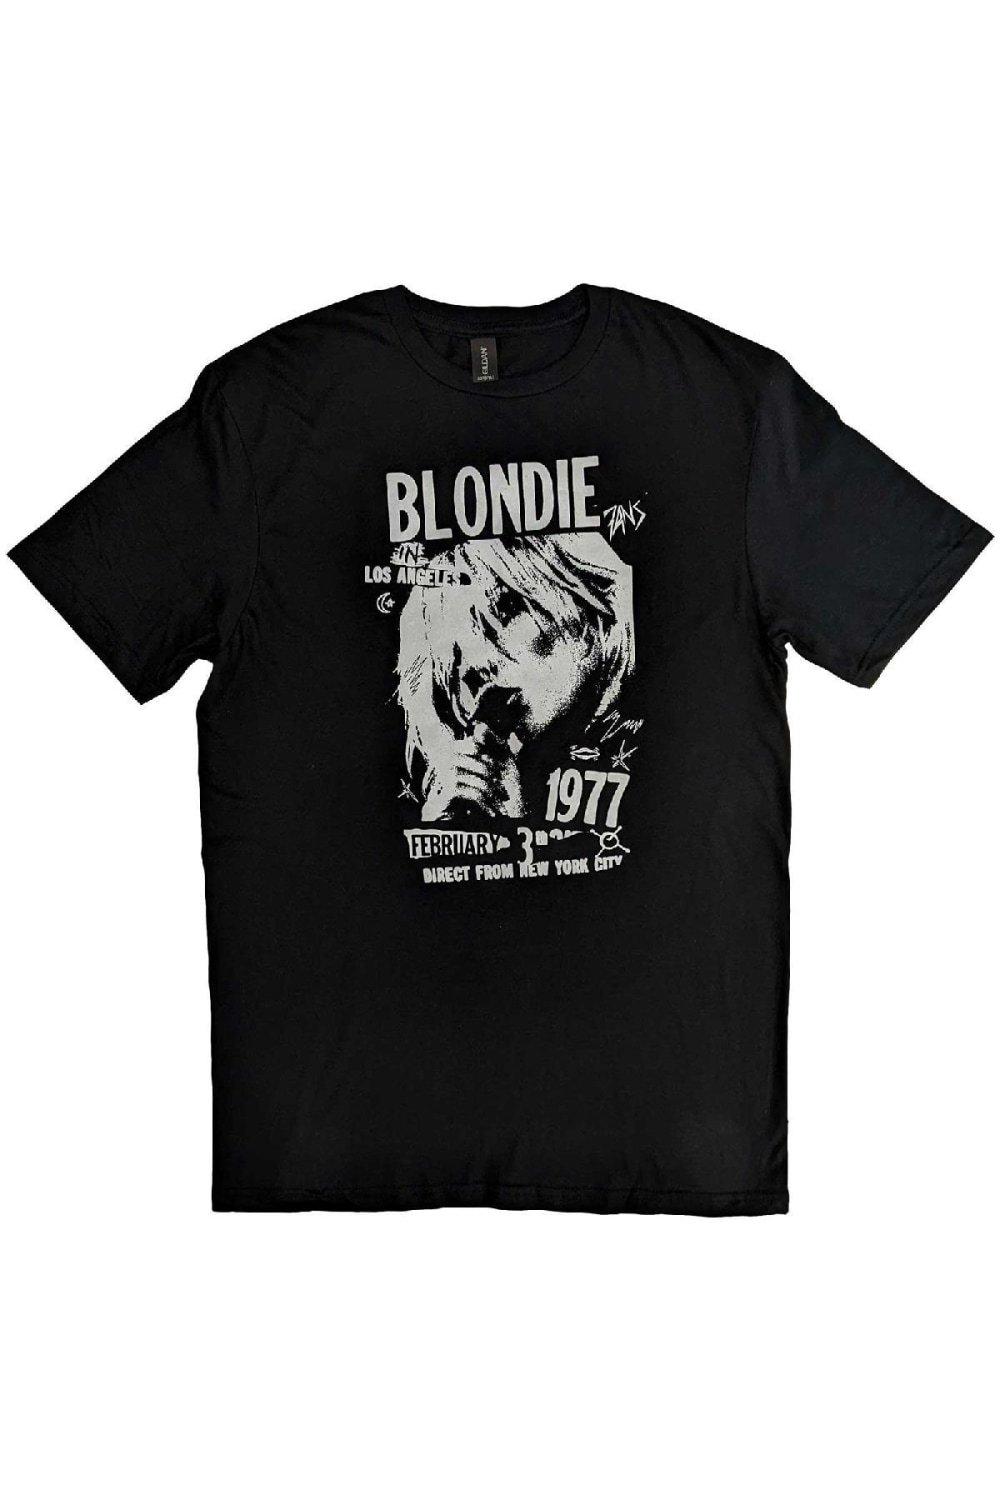 Винтажная хлопковая футболка 1977 года Blondie, черный артуа звезда горна цифровая версия цифровая версия